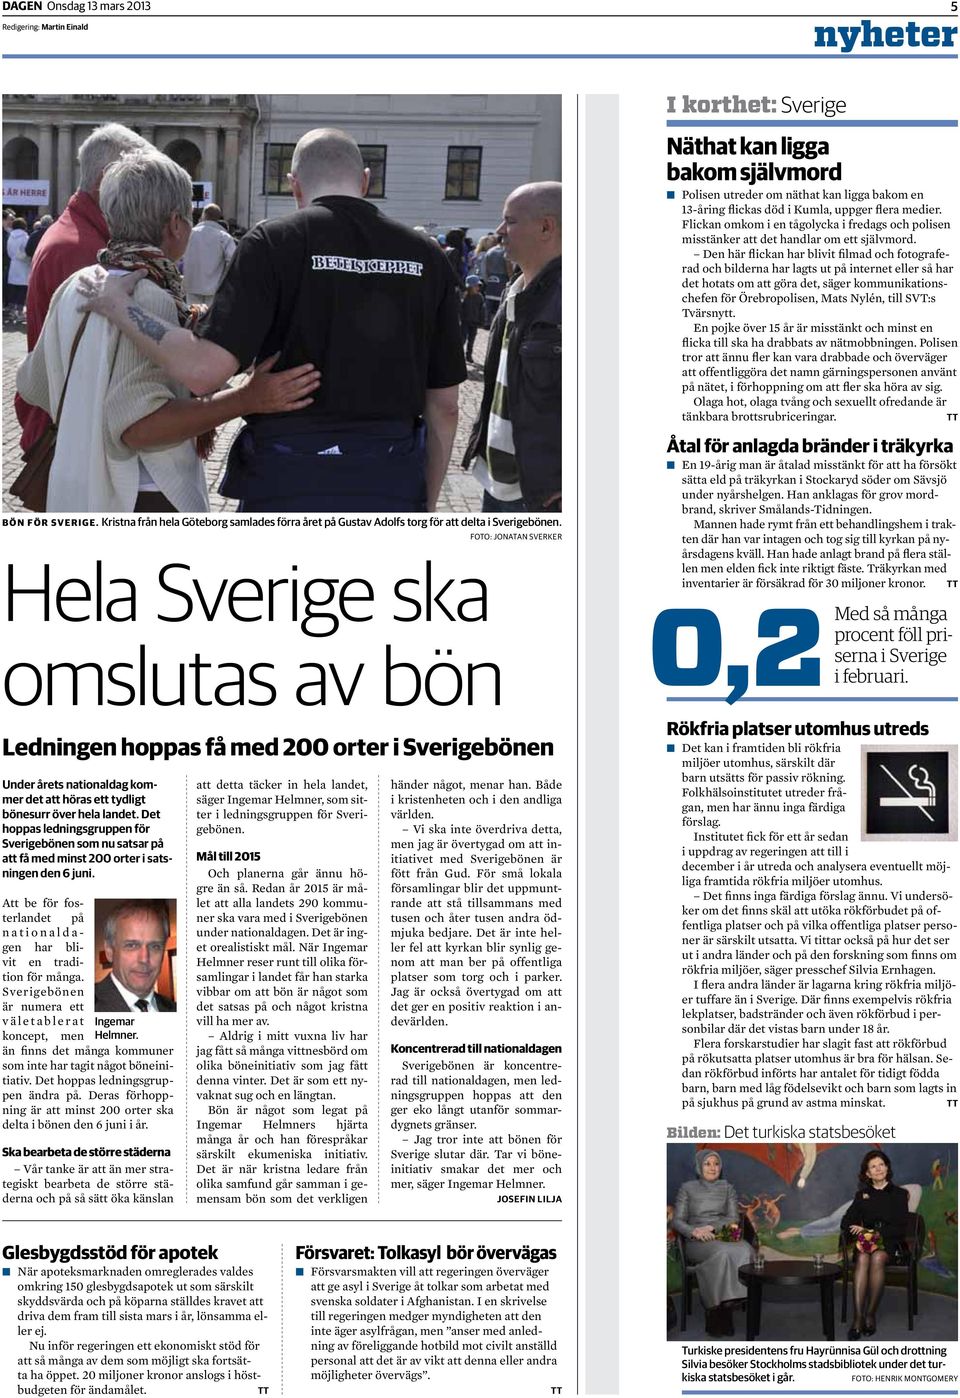 Det hoppas ledningsgruppen för Sverigebönen som nu satsar på att få med minst 200 orter i satsningen den 6 juni.